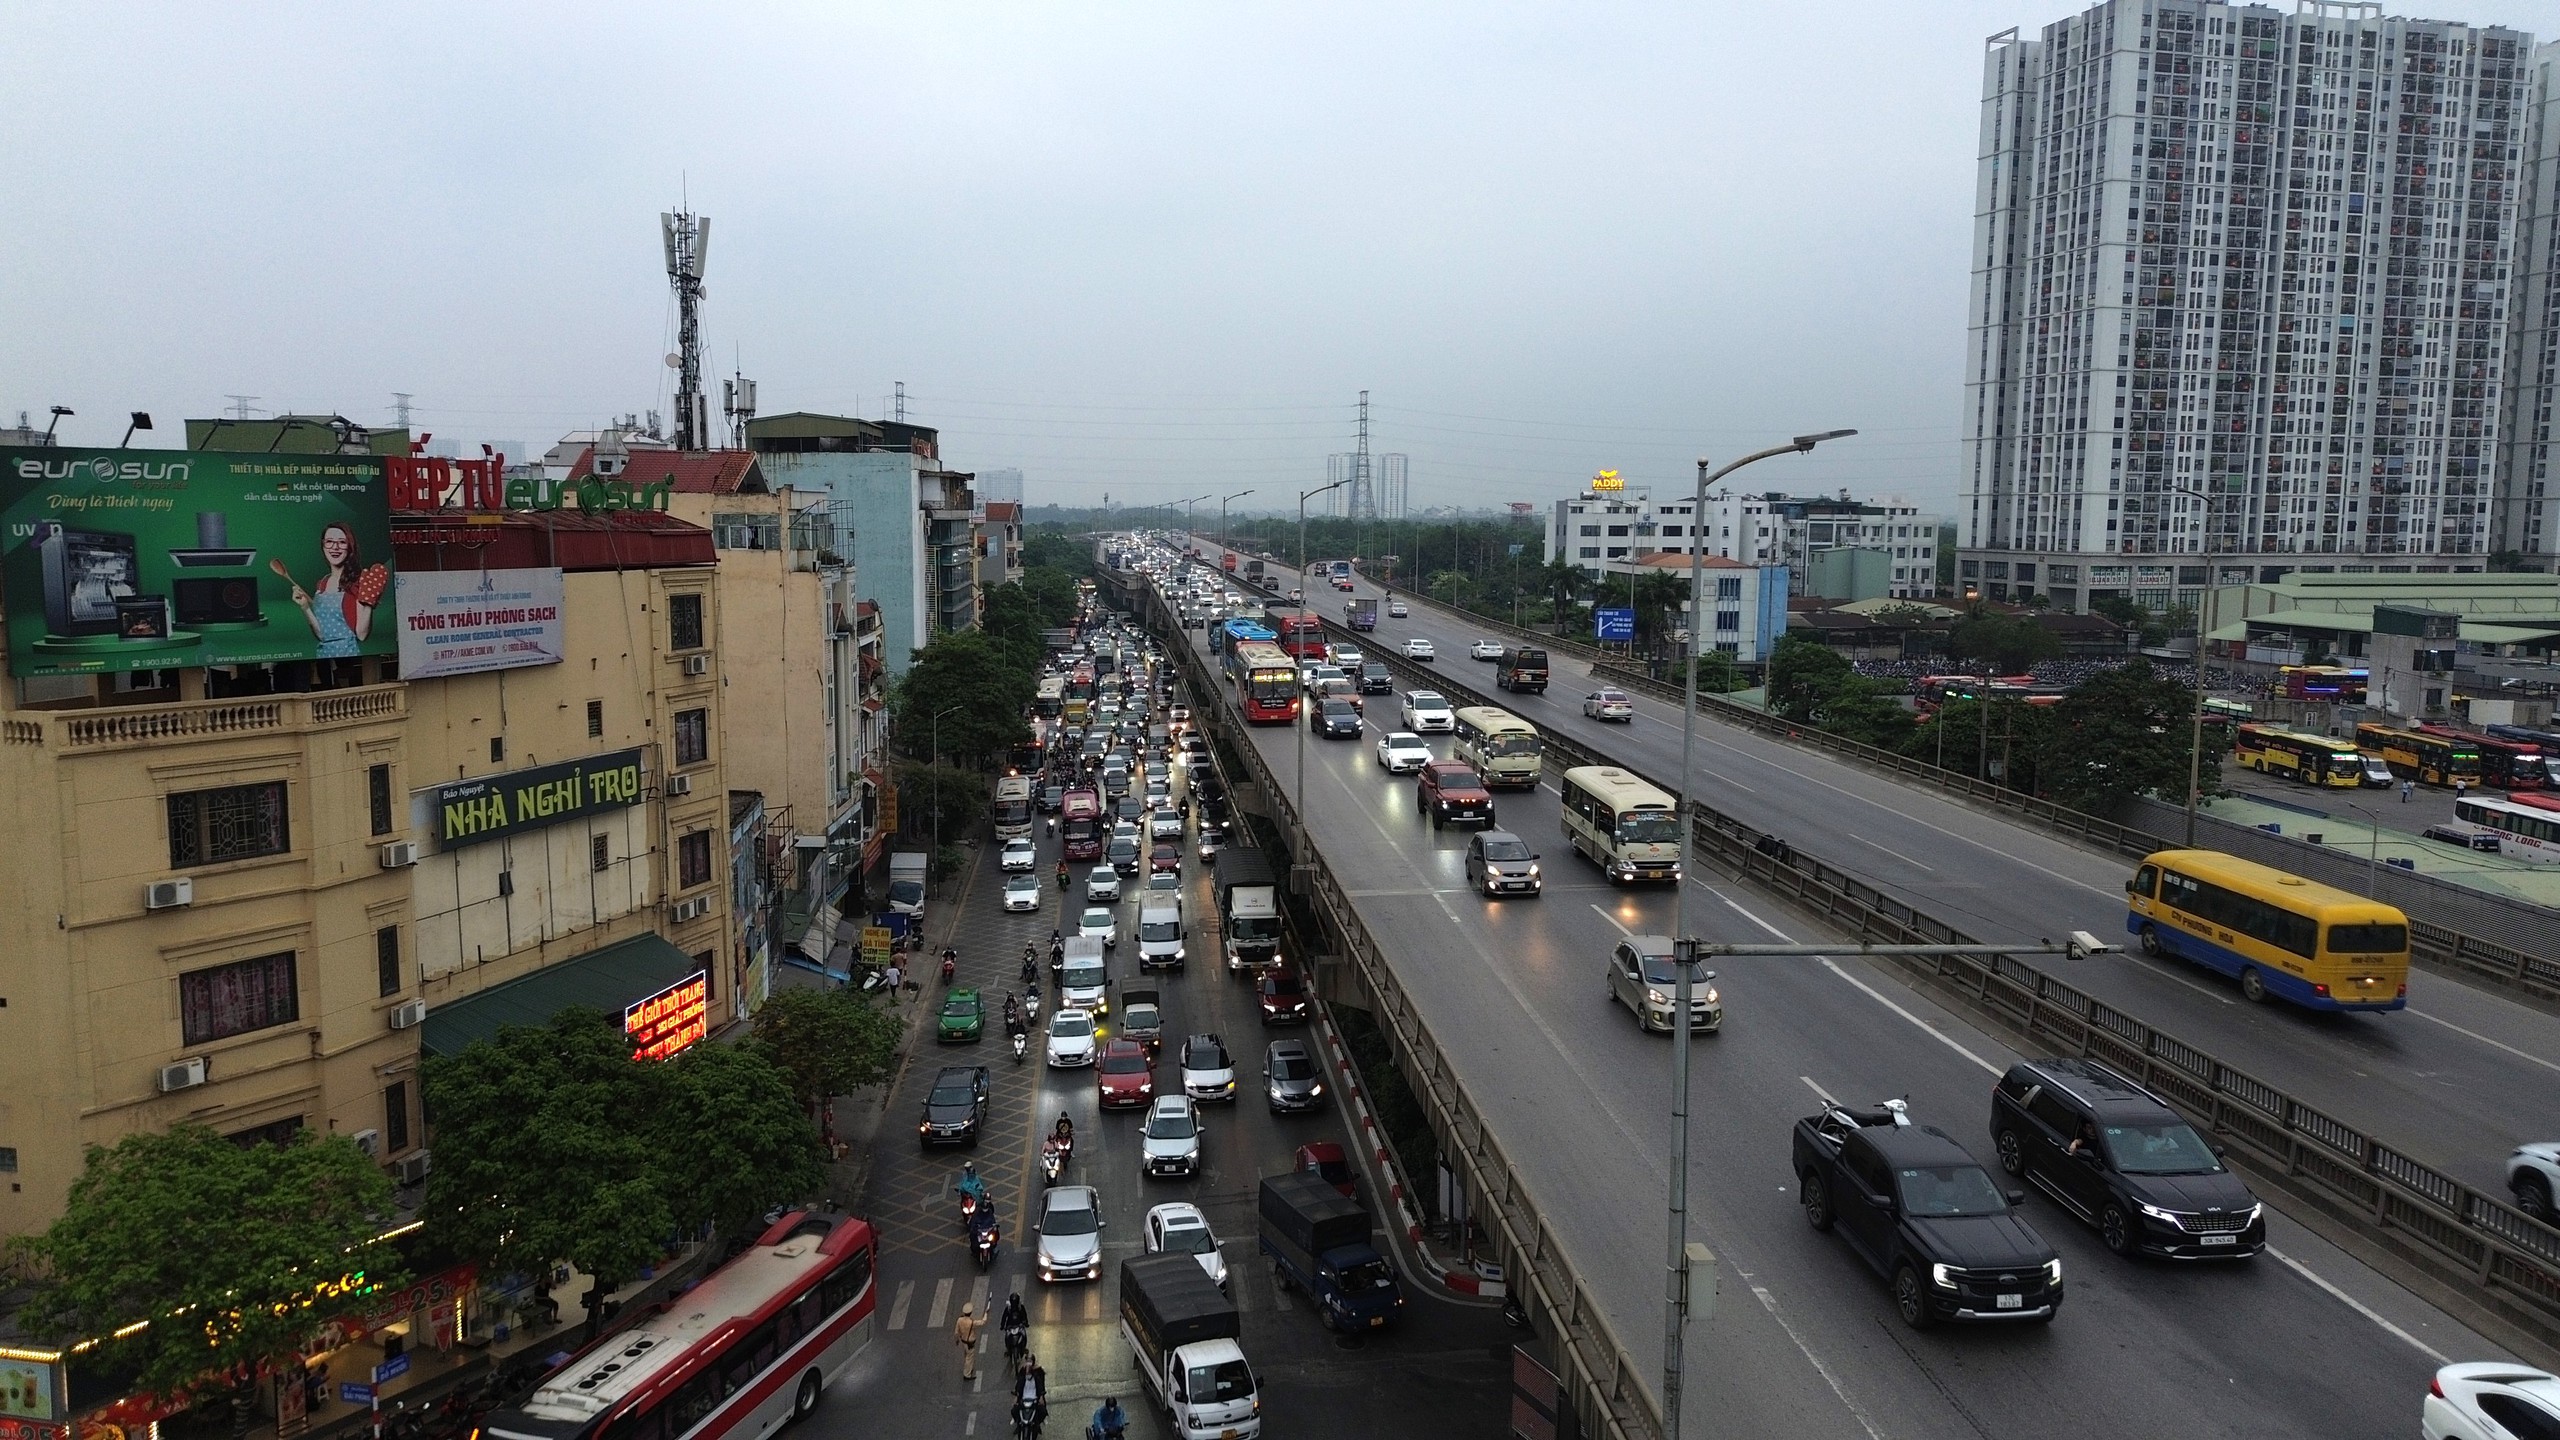 Bất ngờ tình hình giao thông tại Hà Nội vào ngày cuối nghỉ lễ 30/4 - 1/5- Ảnh 4.